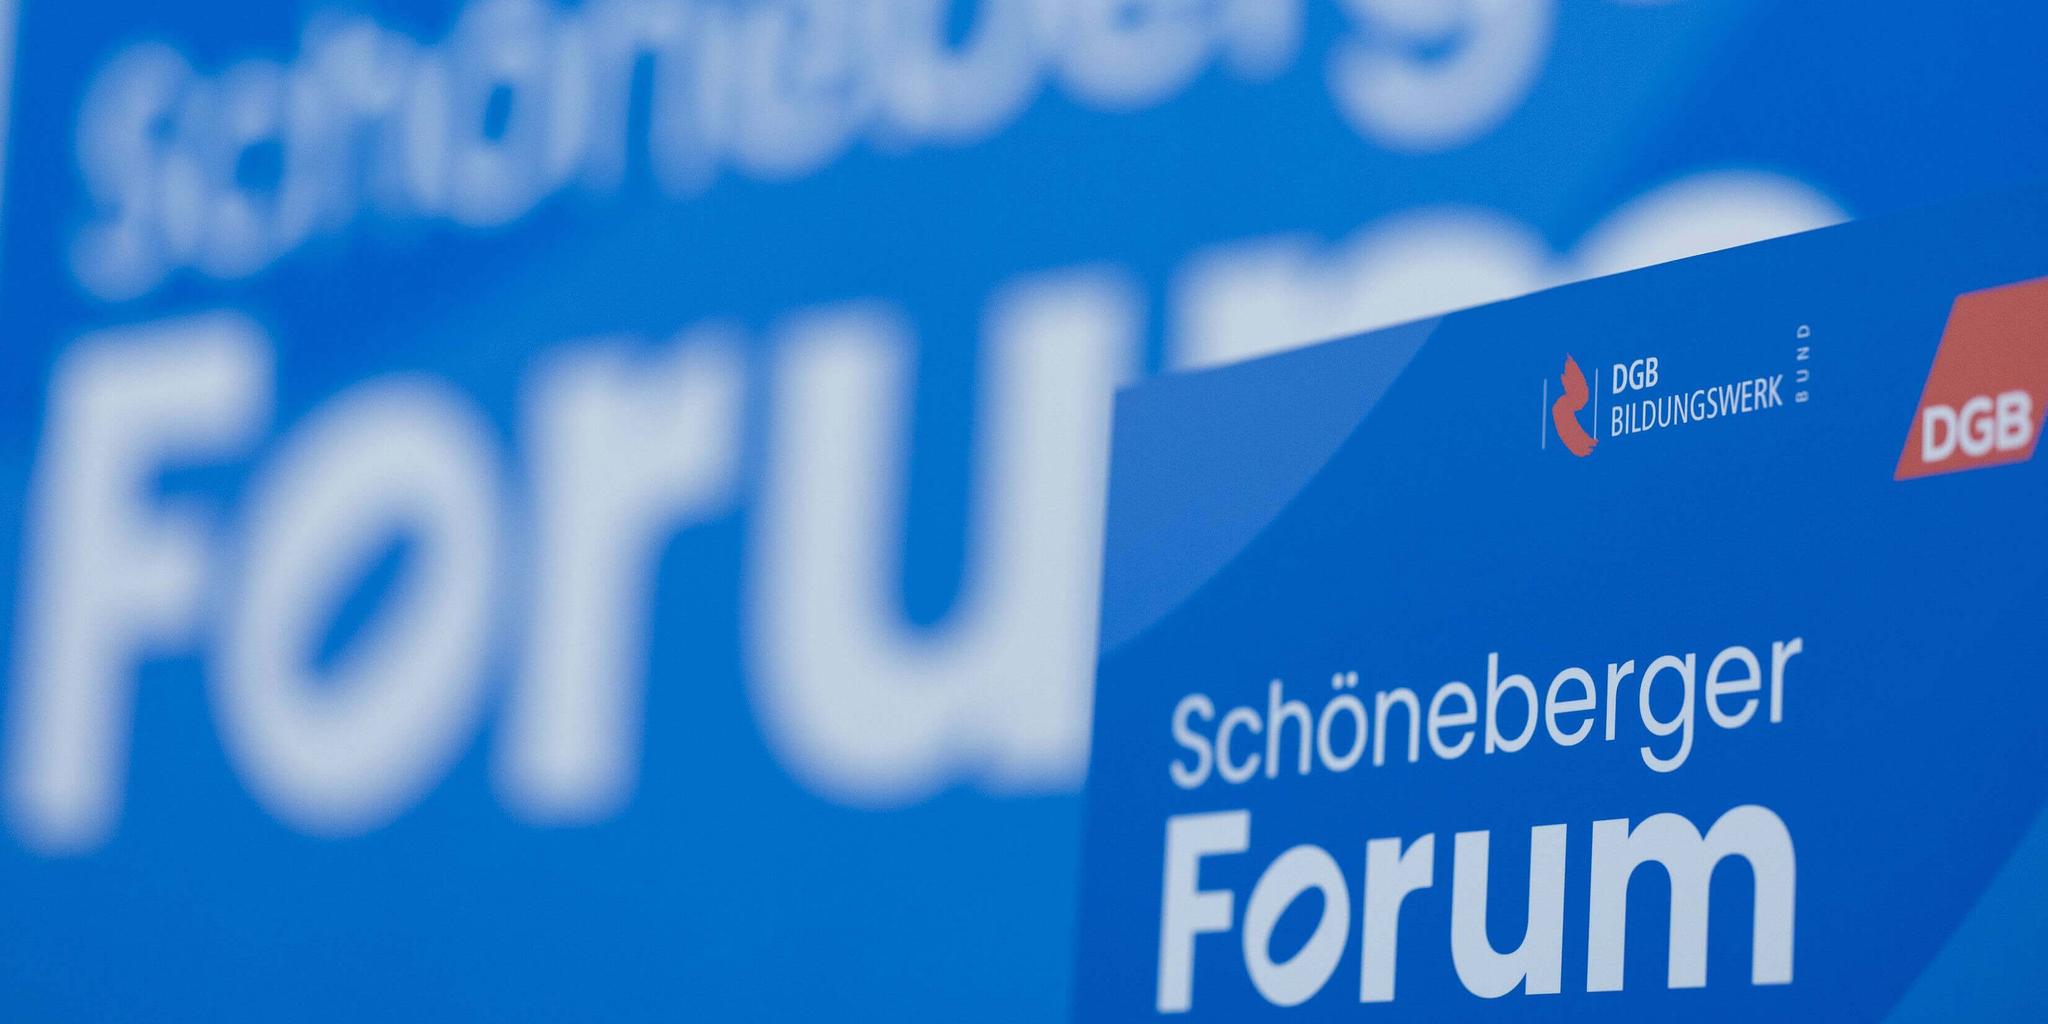 In weißer Schrift "Schöneberger Forum" auf blauen Hintergrund